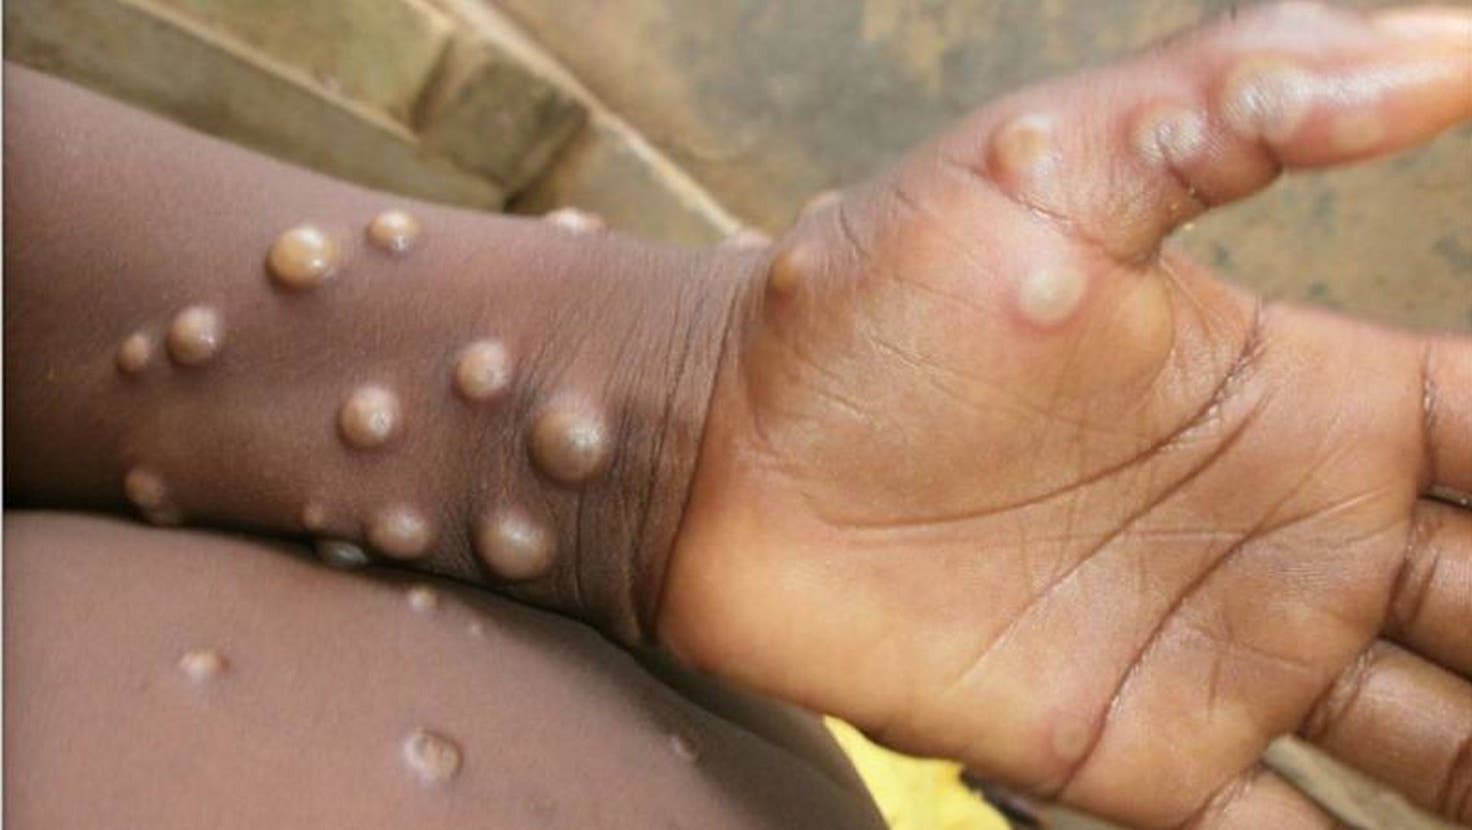 Affenpockenviren führen zu starken Hautausschlägen, die im Gesicht beginnen, sich aber über den ganzen Körper verteilen können. (Bild: WHO/Nigeria Centre Of Disease Control)